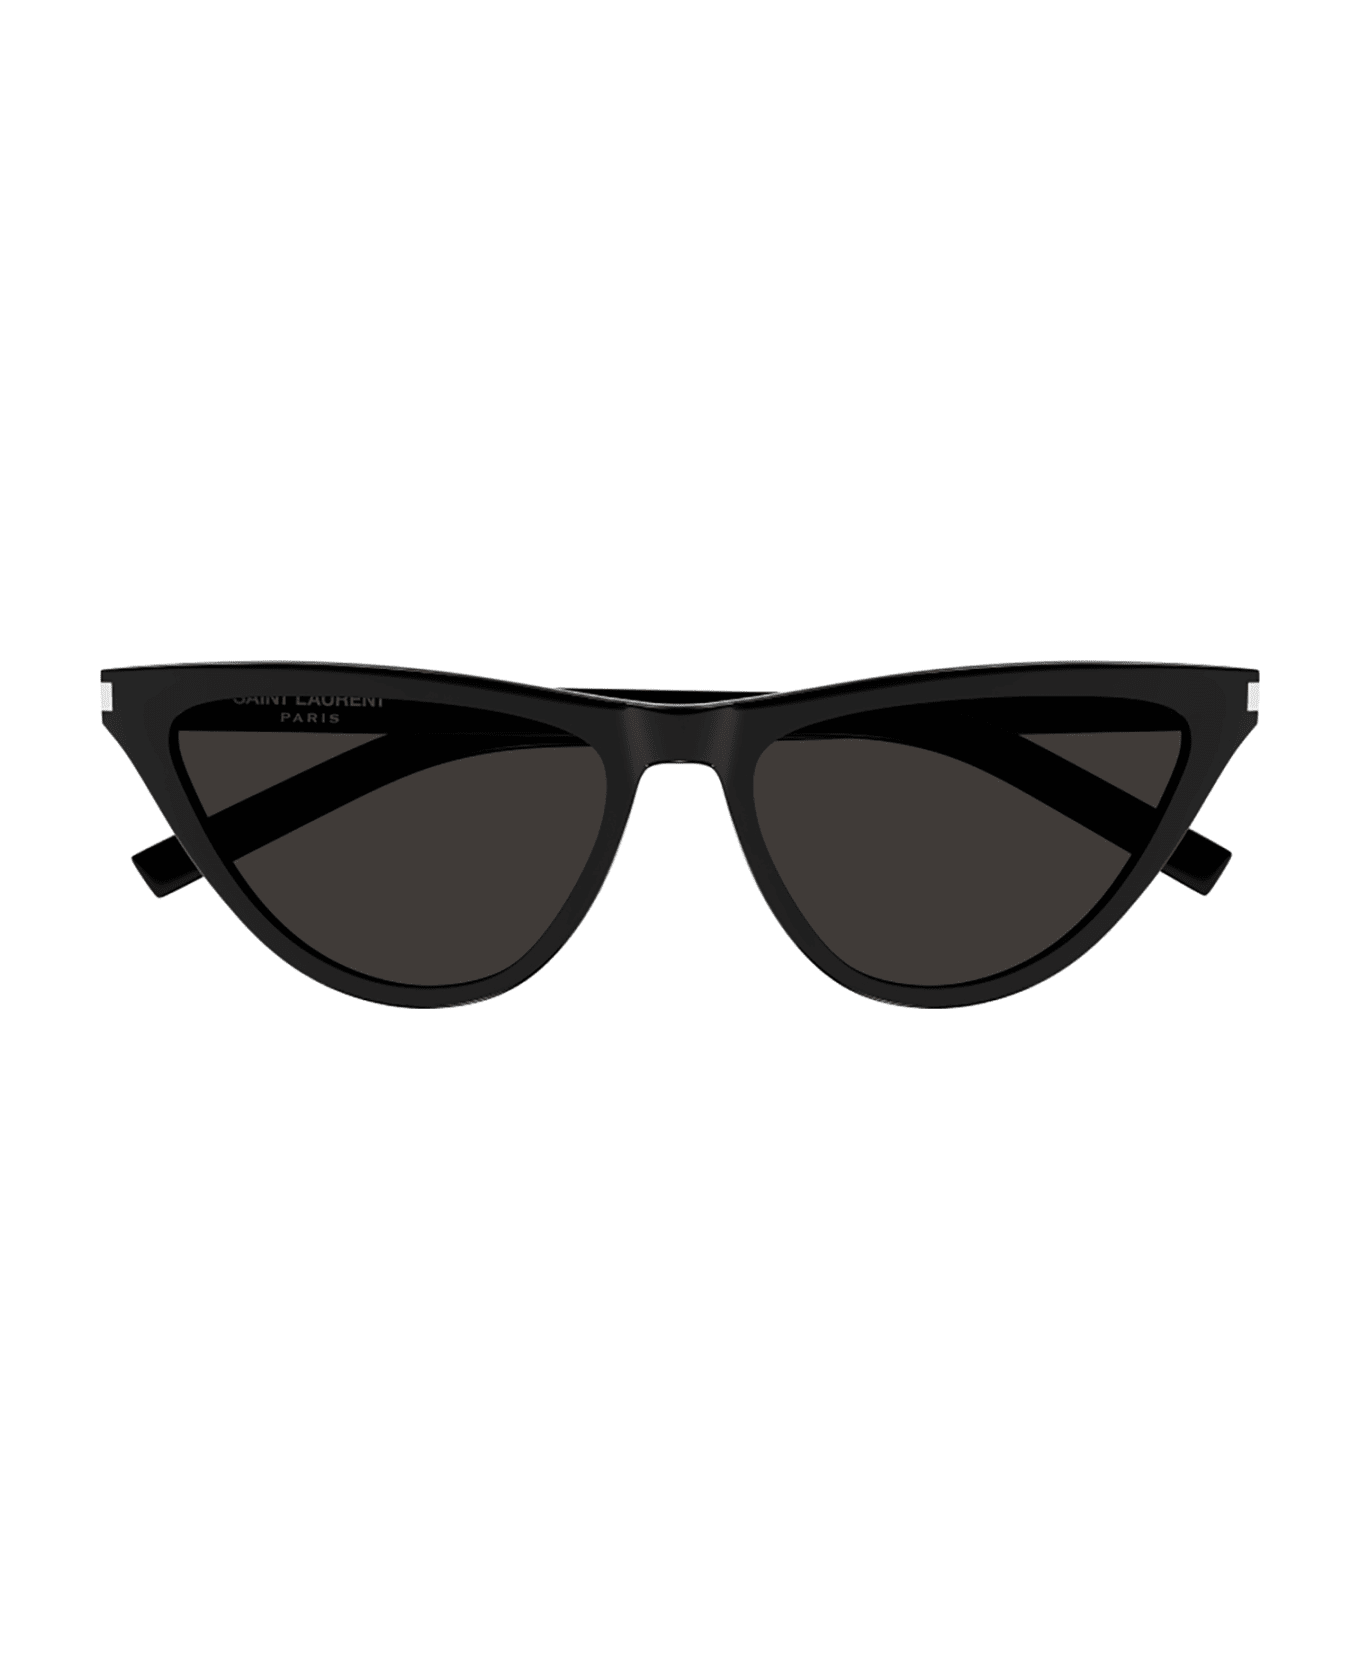 Saint Laurent Eyewear SL 550 SLIM Sunglasses - Black Black Black サングラス